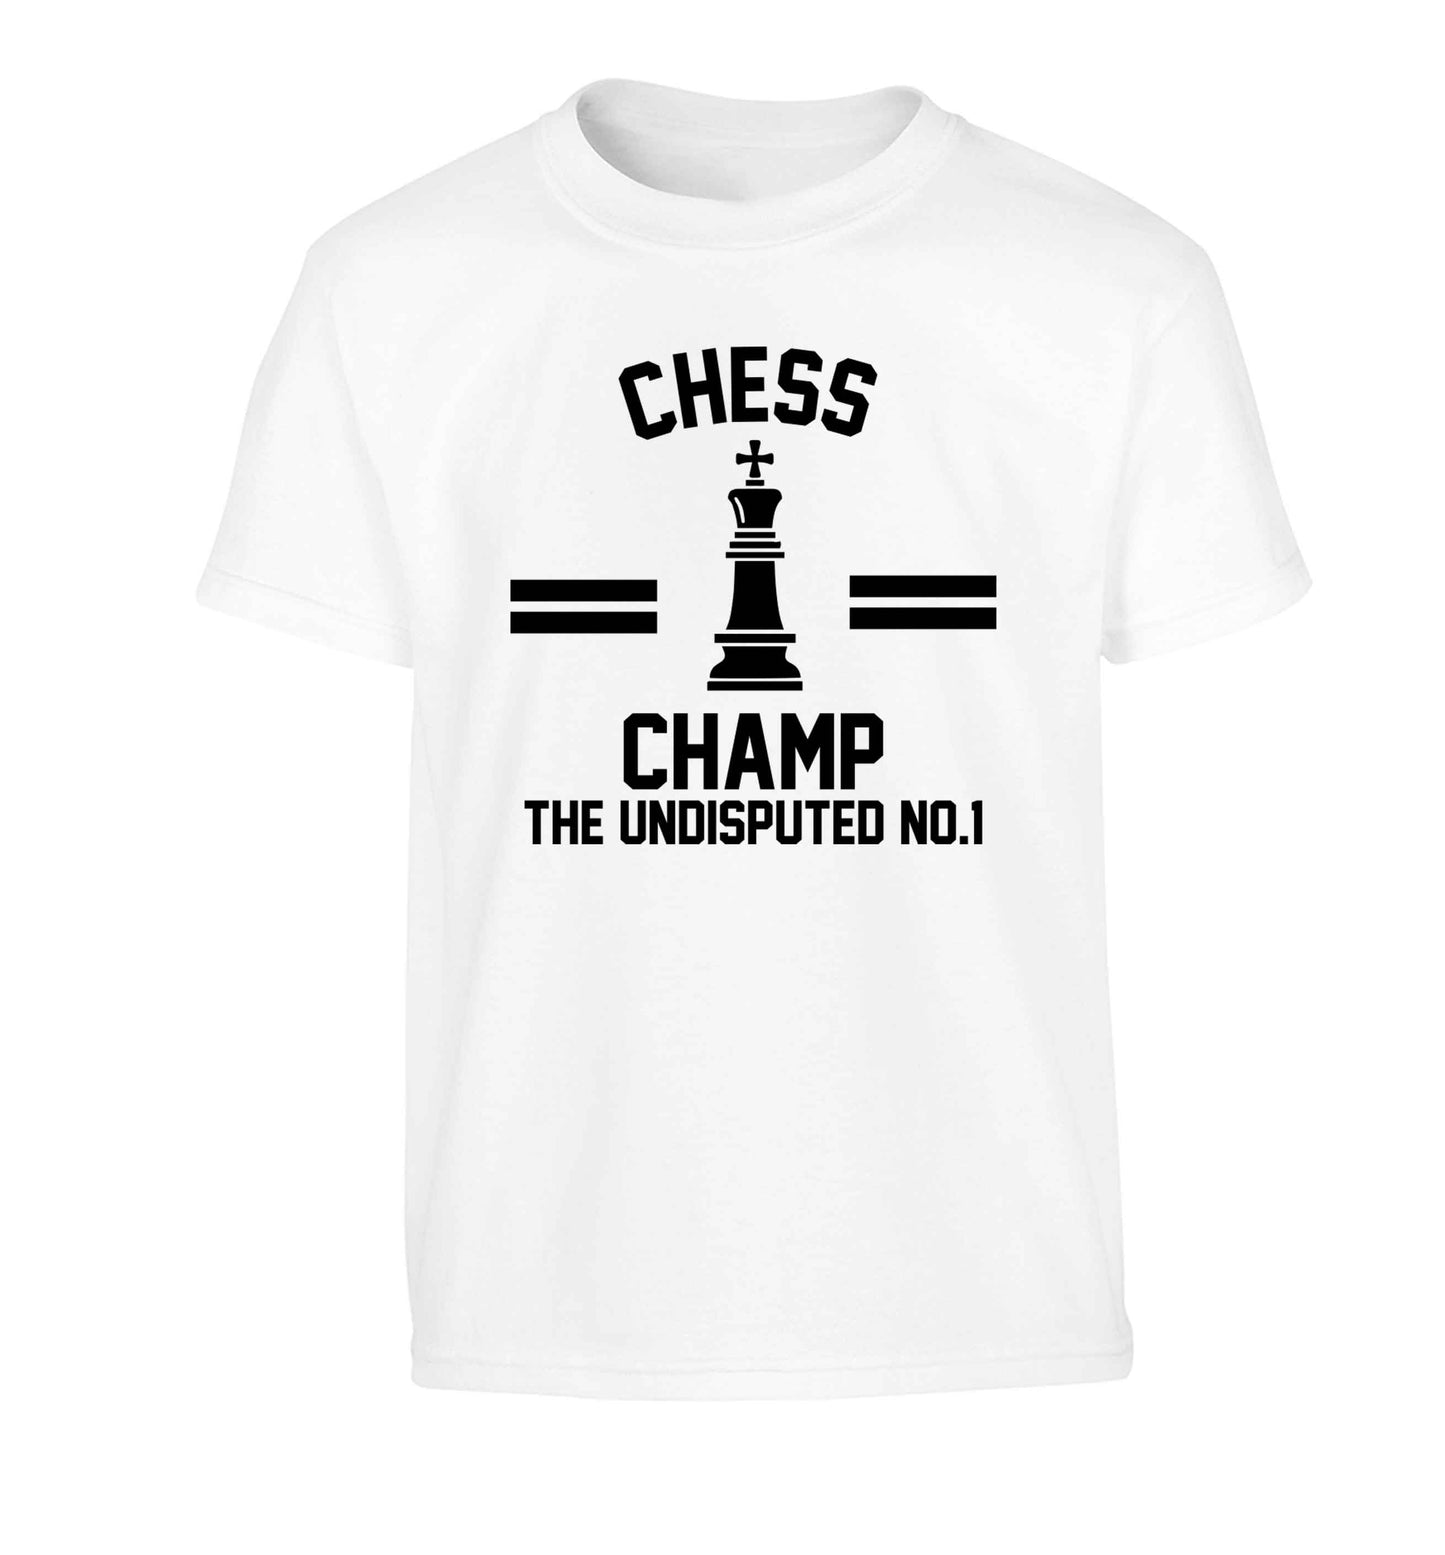 Undisputed chess championship no.1  Children's white Tshirt 12-13 Years